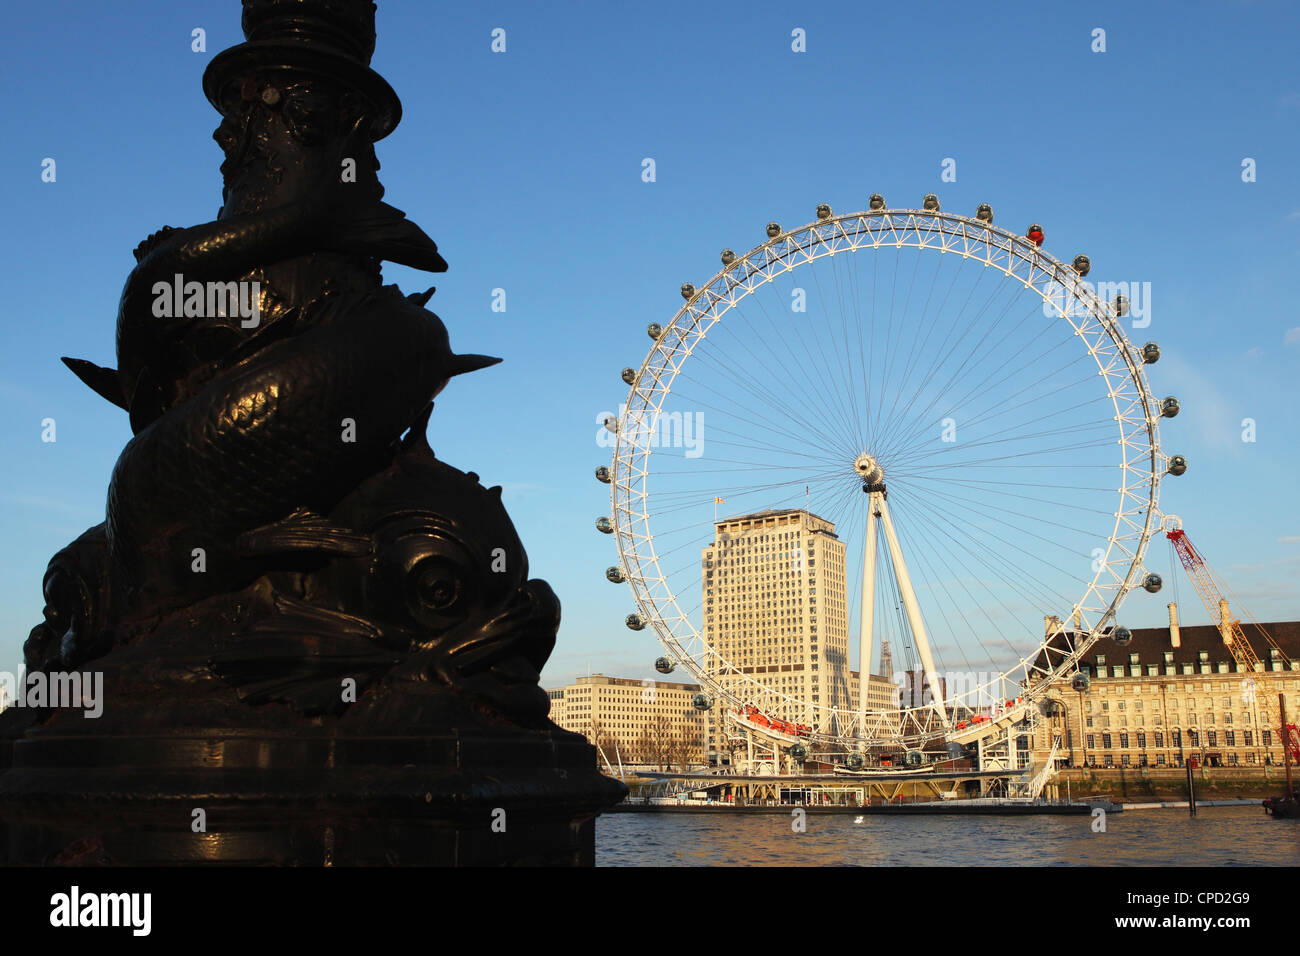 Poisson ornemental lampadaire sur le remblai, par la Tamise, en face du London Eye, Westminster, London, England, UK Banque D'Images